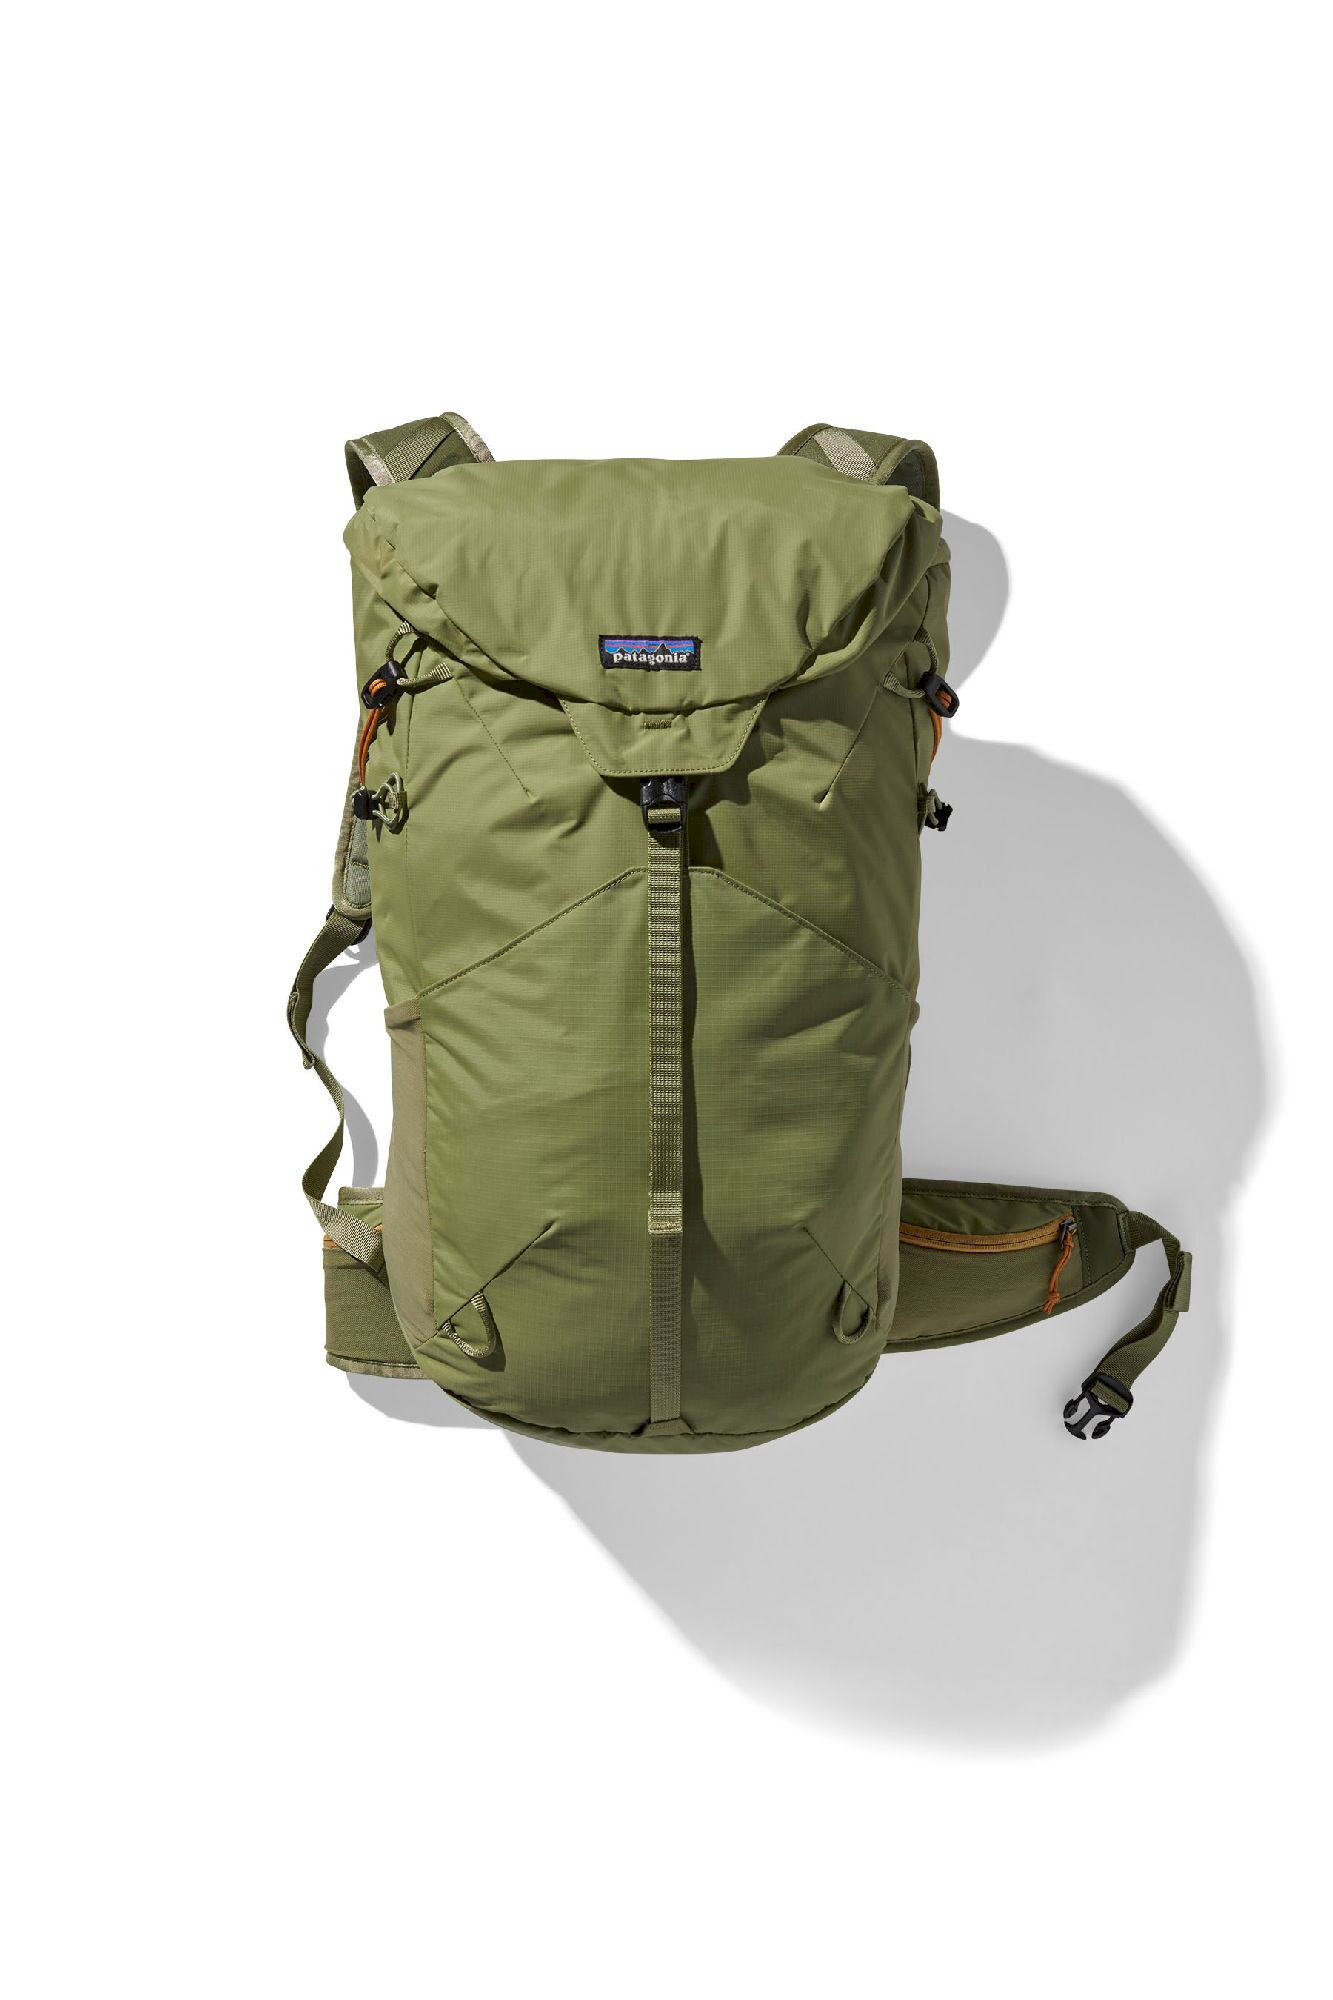 Patagonia Altvia Pack 28L - Walking backpack